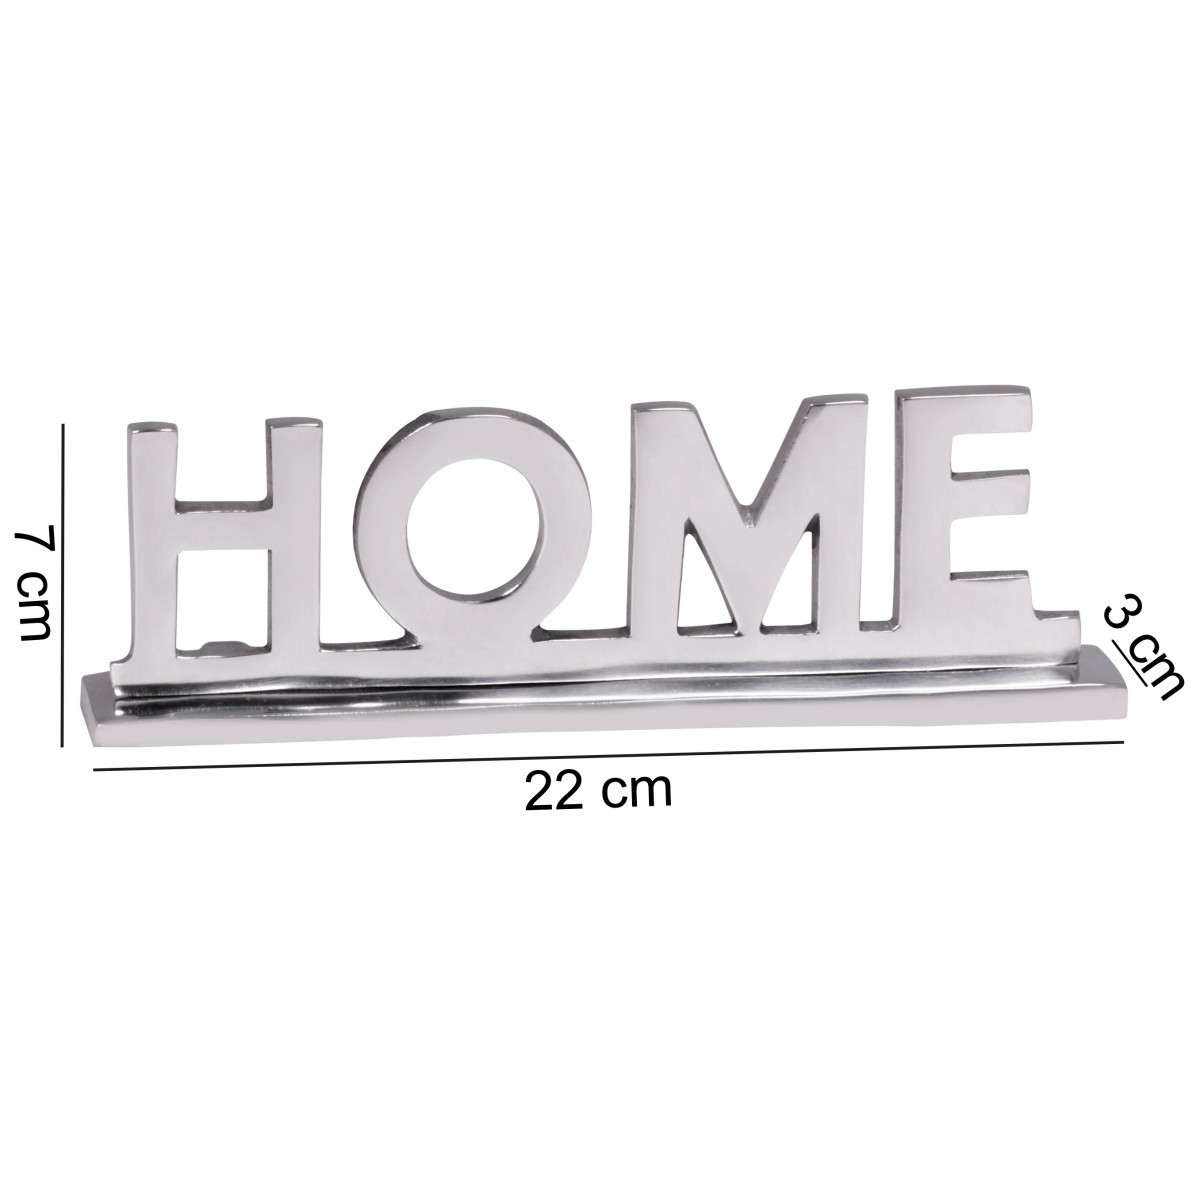 Silber Wohnung Norma24 Home Wohnzimmer WOHNLING Ess-Tisch- Alu cm Dekoration Design 22 Wohndeko Aluminium | Deko Schriftzug